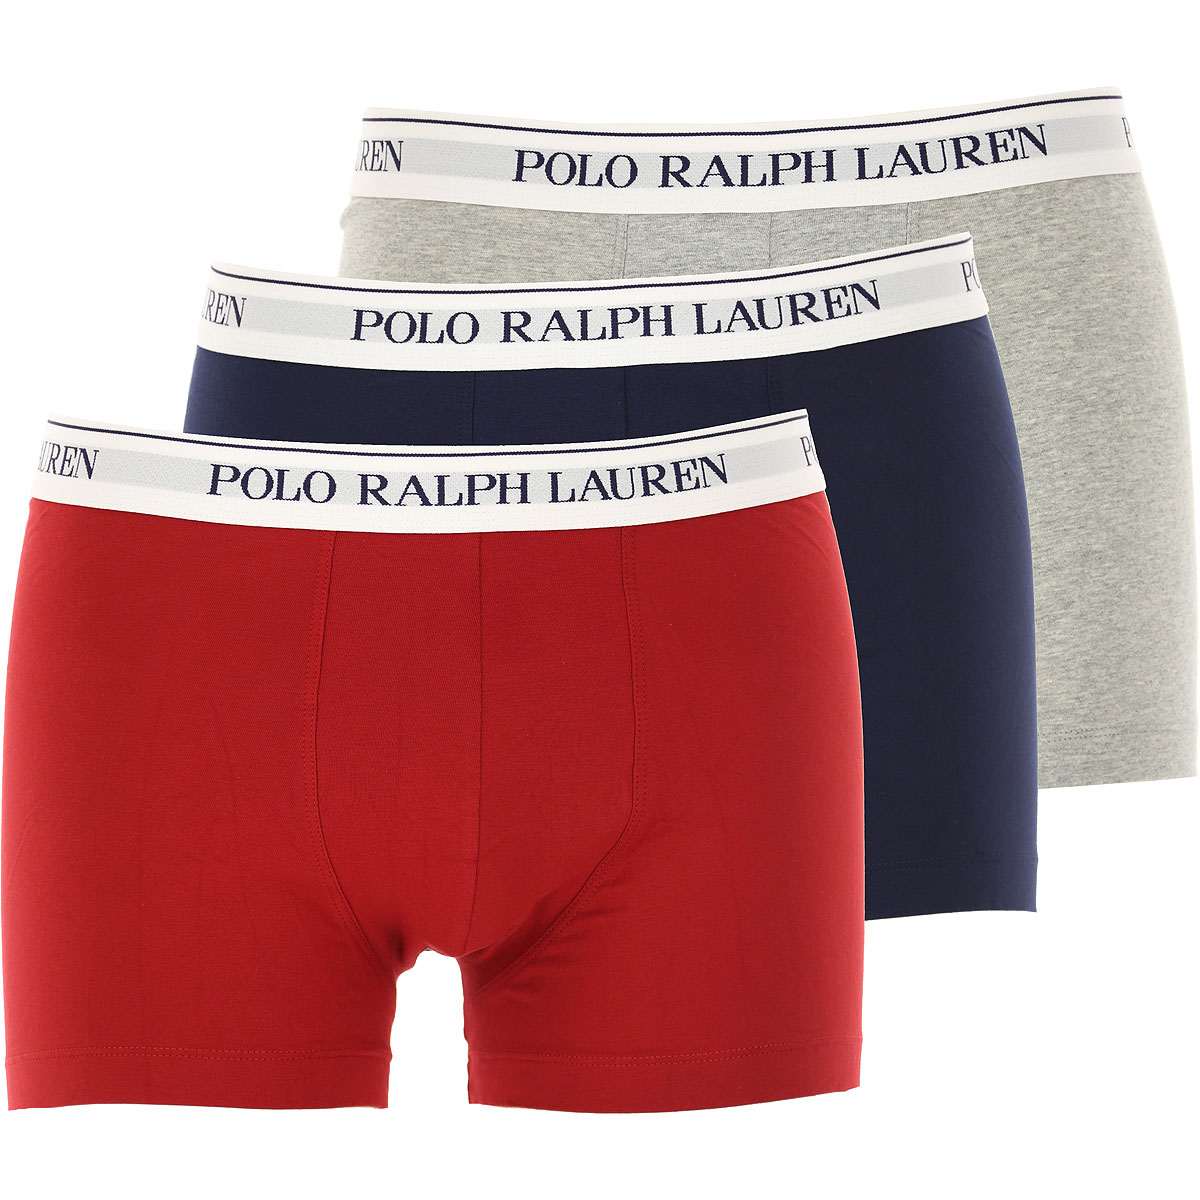 Ralph Lauren Boxer Shorts für Herren, Unterhose, Short, Boxer Günstig im Sale, Hellgrau, Stretch Cotton, 2017, L L M S XL